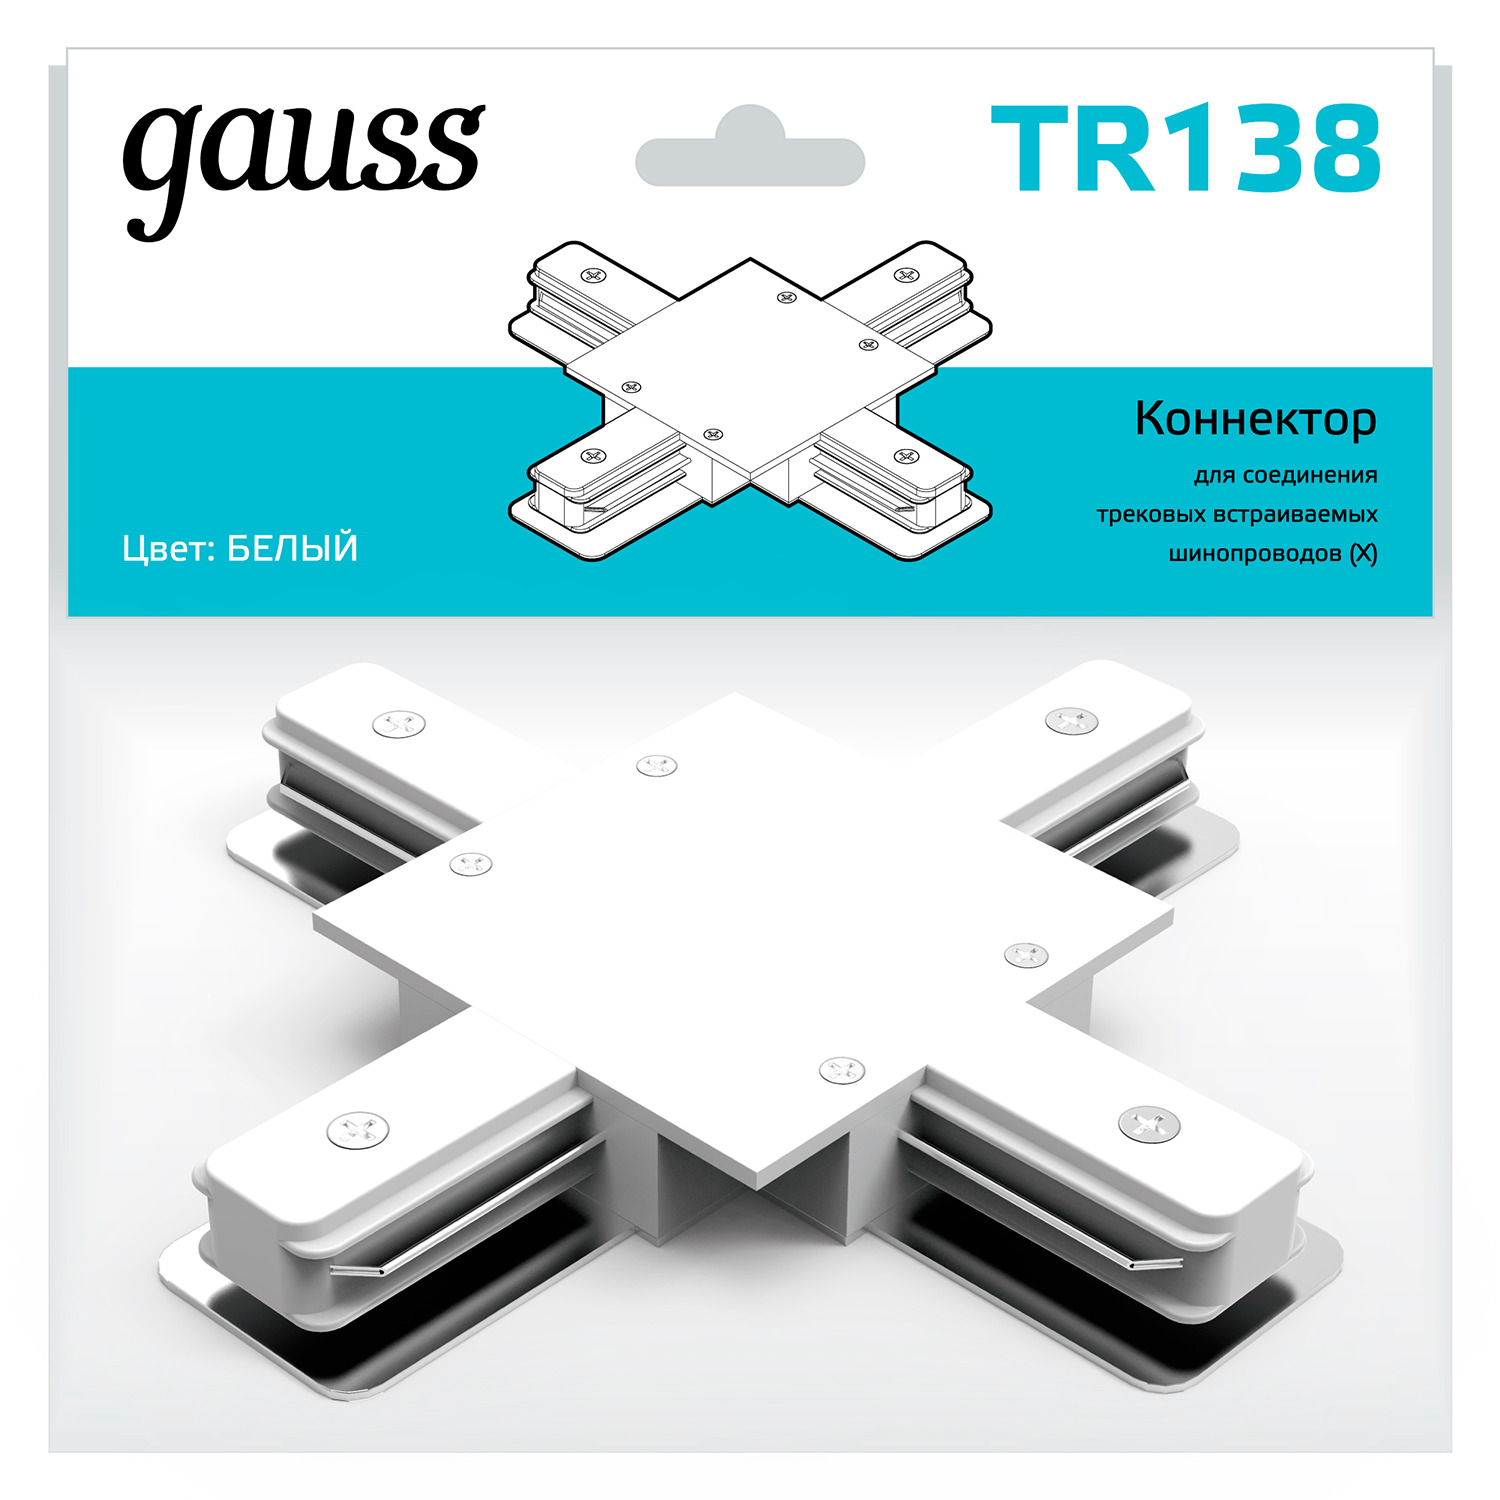 gauss коннектор для встраиваемых трековых шинопроводов черный tr137 50 шт Коннектор Gauss для встраиваемых трековых шинопроводов (+) белый